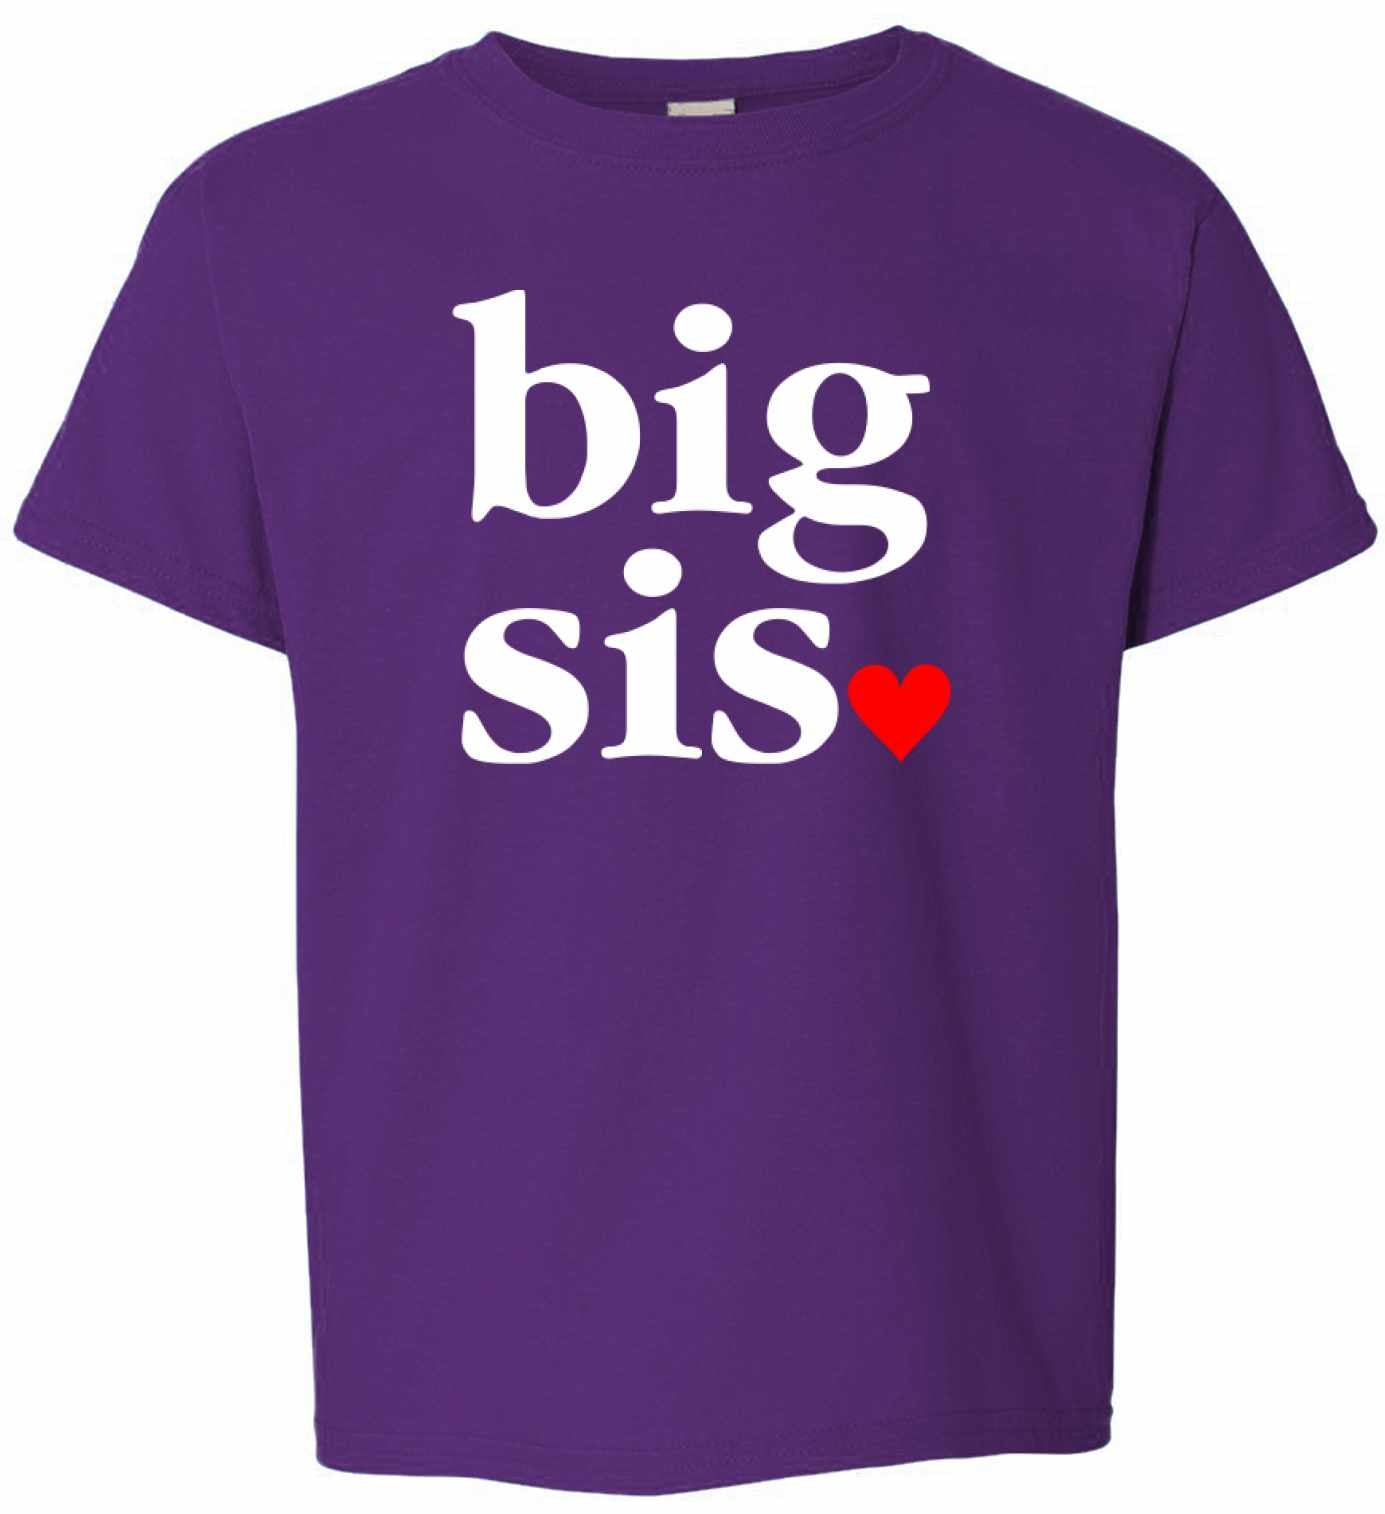 Big Sis, Big Sister on Kids T-Shirt